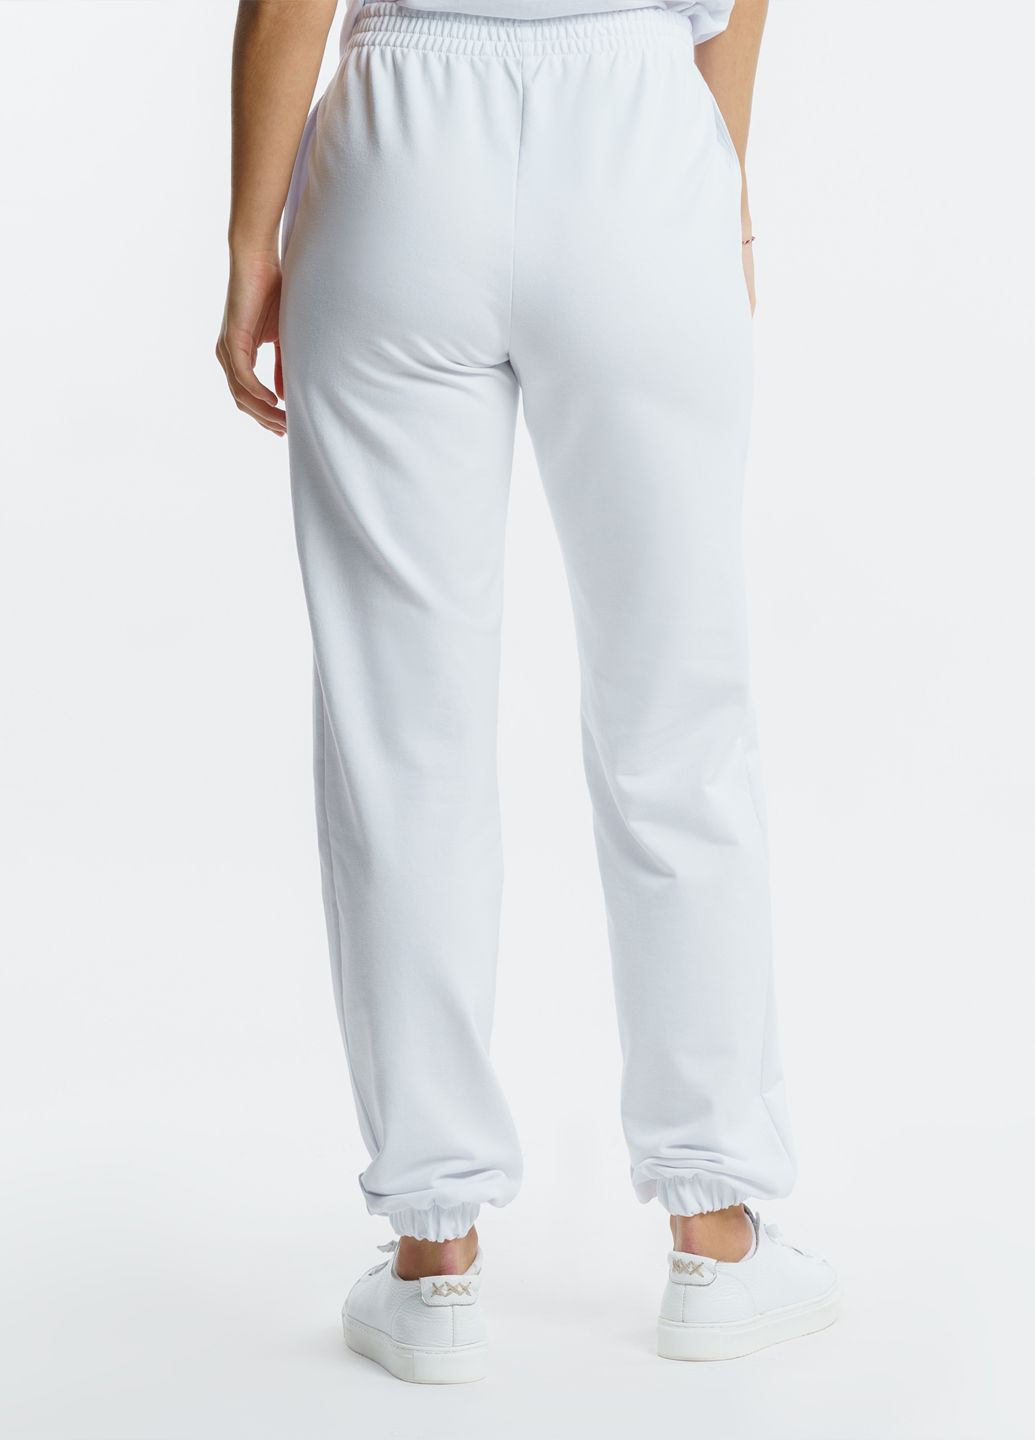 Спортивні штани жіночі Freedom білі Arber sportpants w6 (282841898)